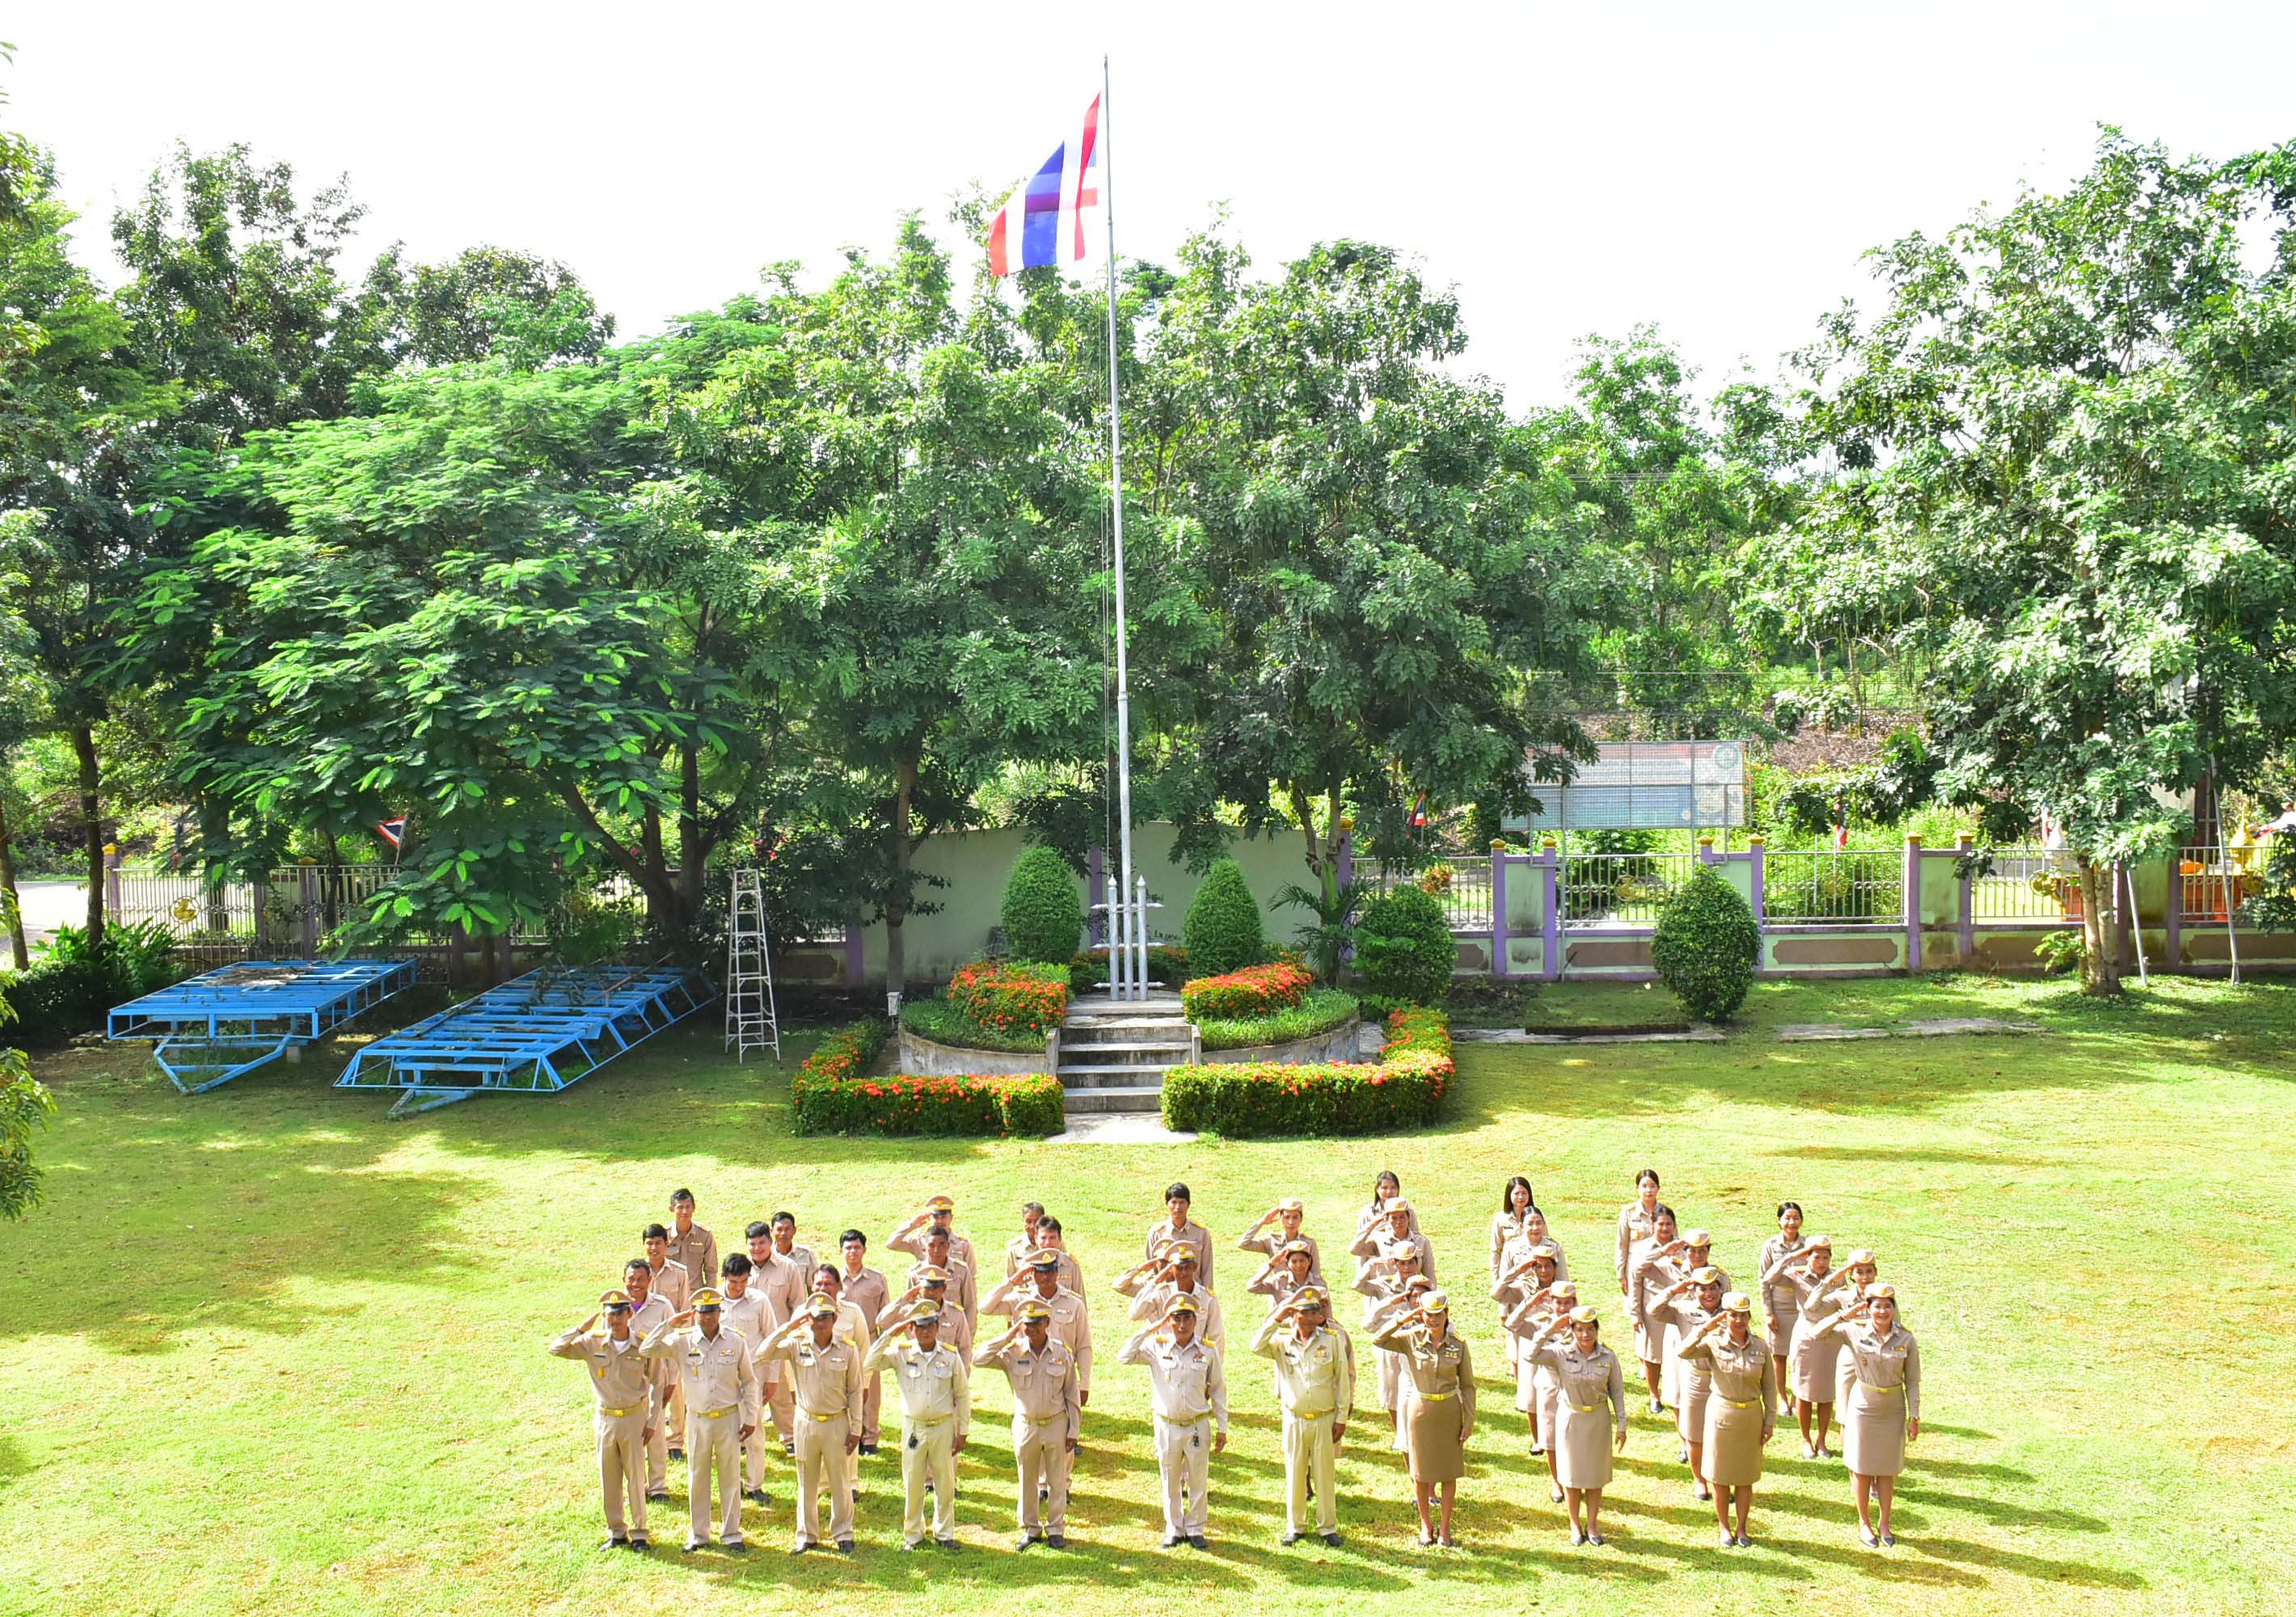 วันธงชาติไทย 28 กันยายน กิจกรรมเคารพธงชาติและร้องเพลงชาติไทย เนื่องใน 